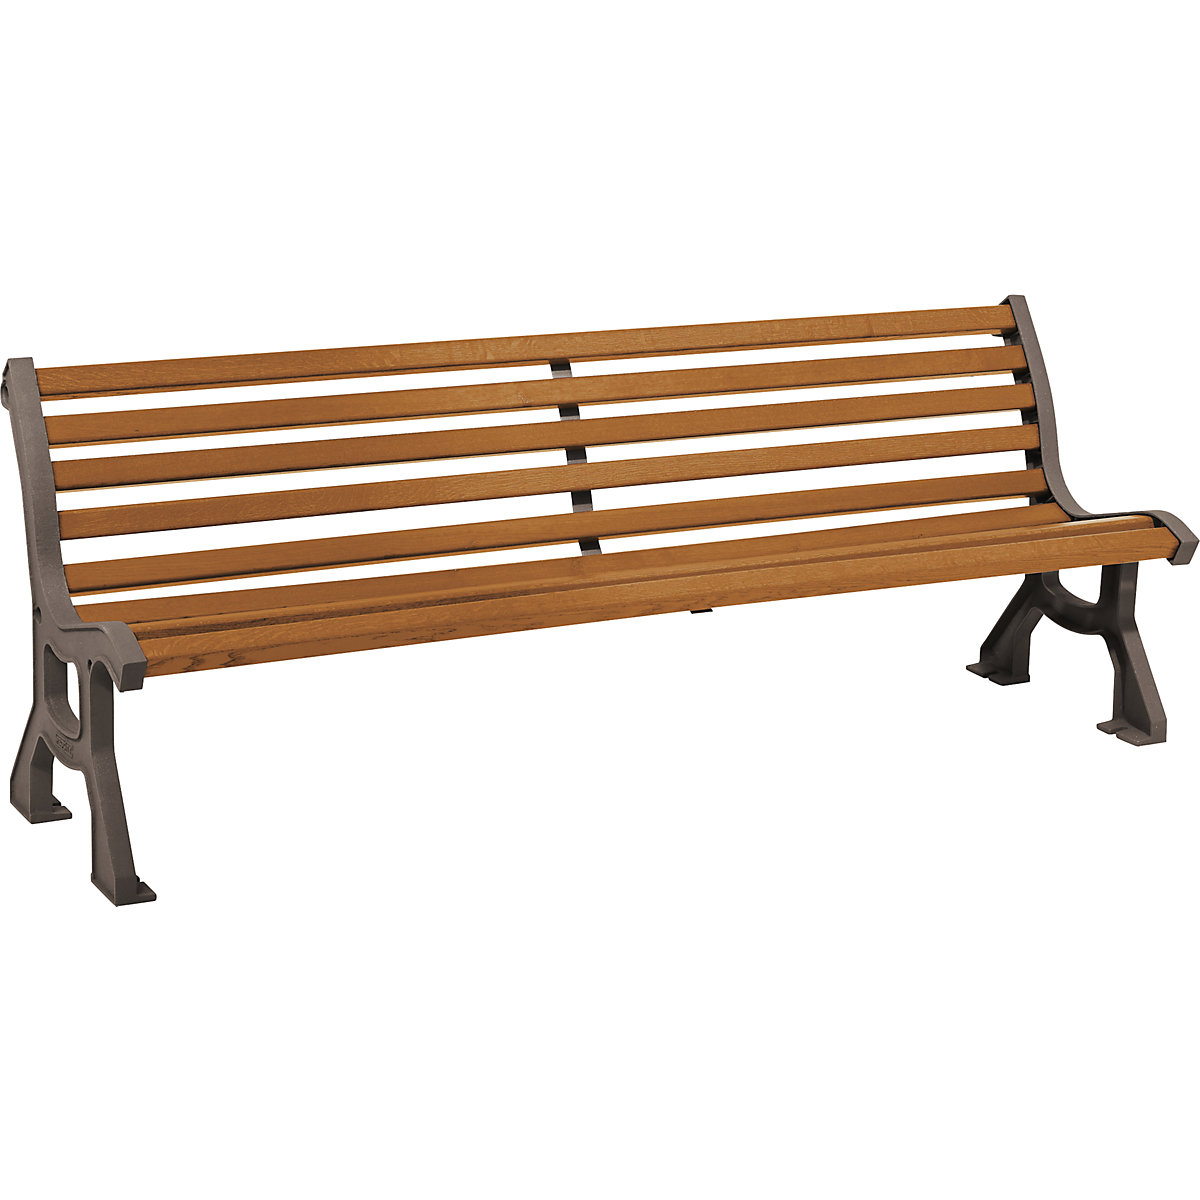 Drewniana ławka LUBLIN – PROCITY, głęb. siedziska 385 mm, metallic, imitacja jasnego dębu-4